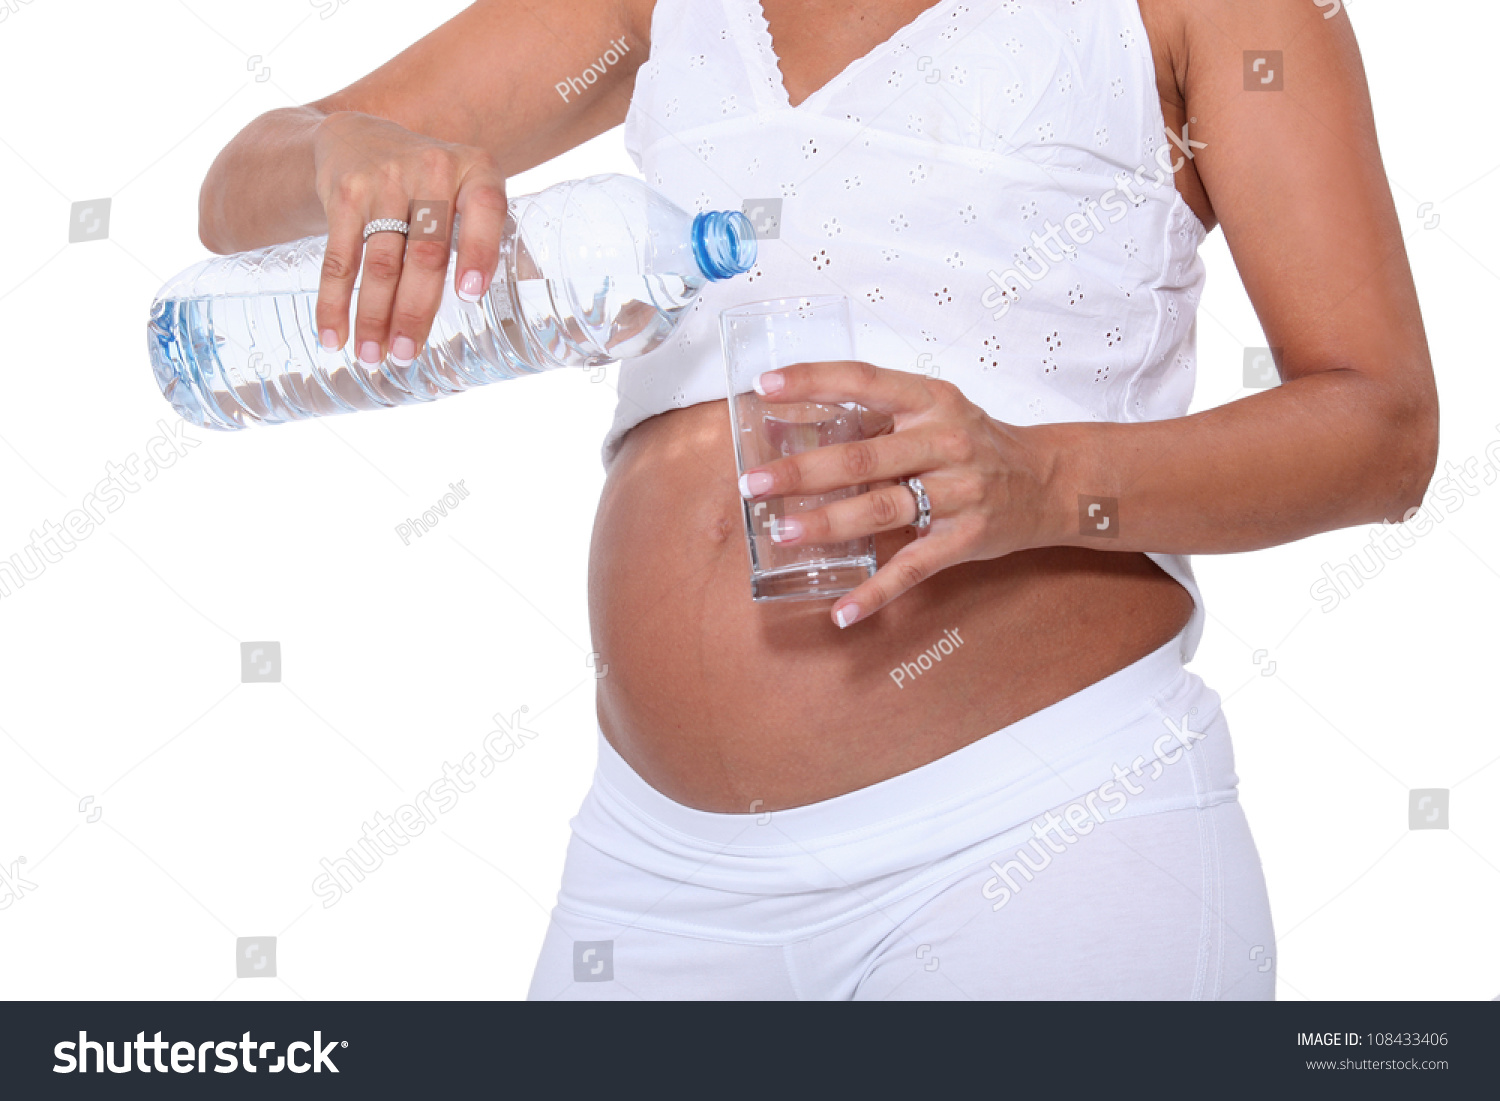 Живот без вод. Питьевой режим беременной женщины.